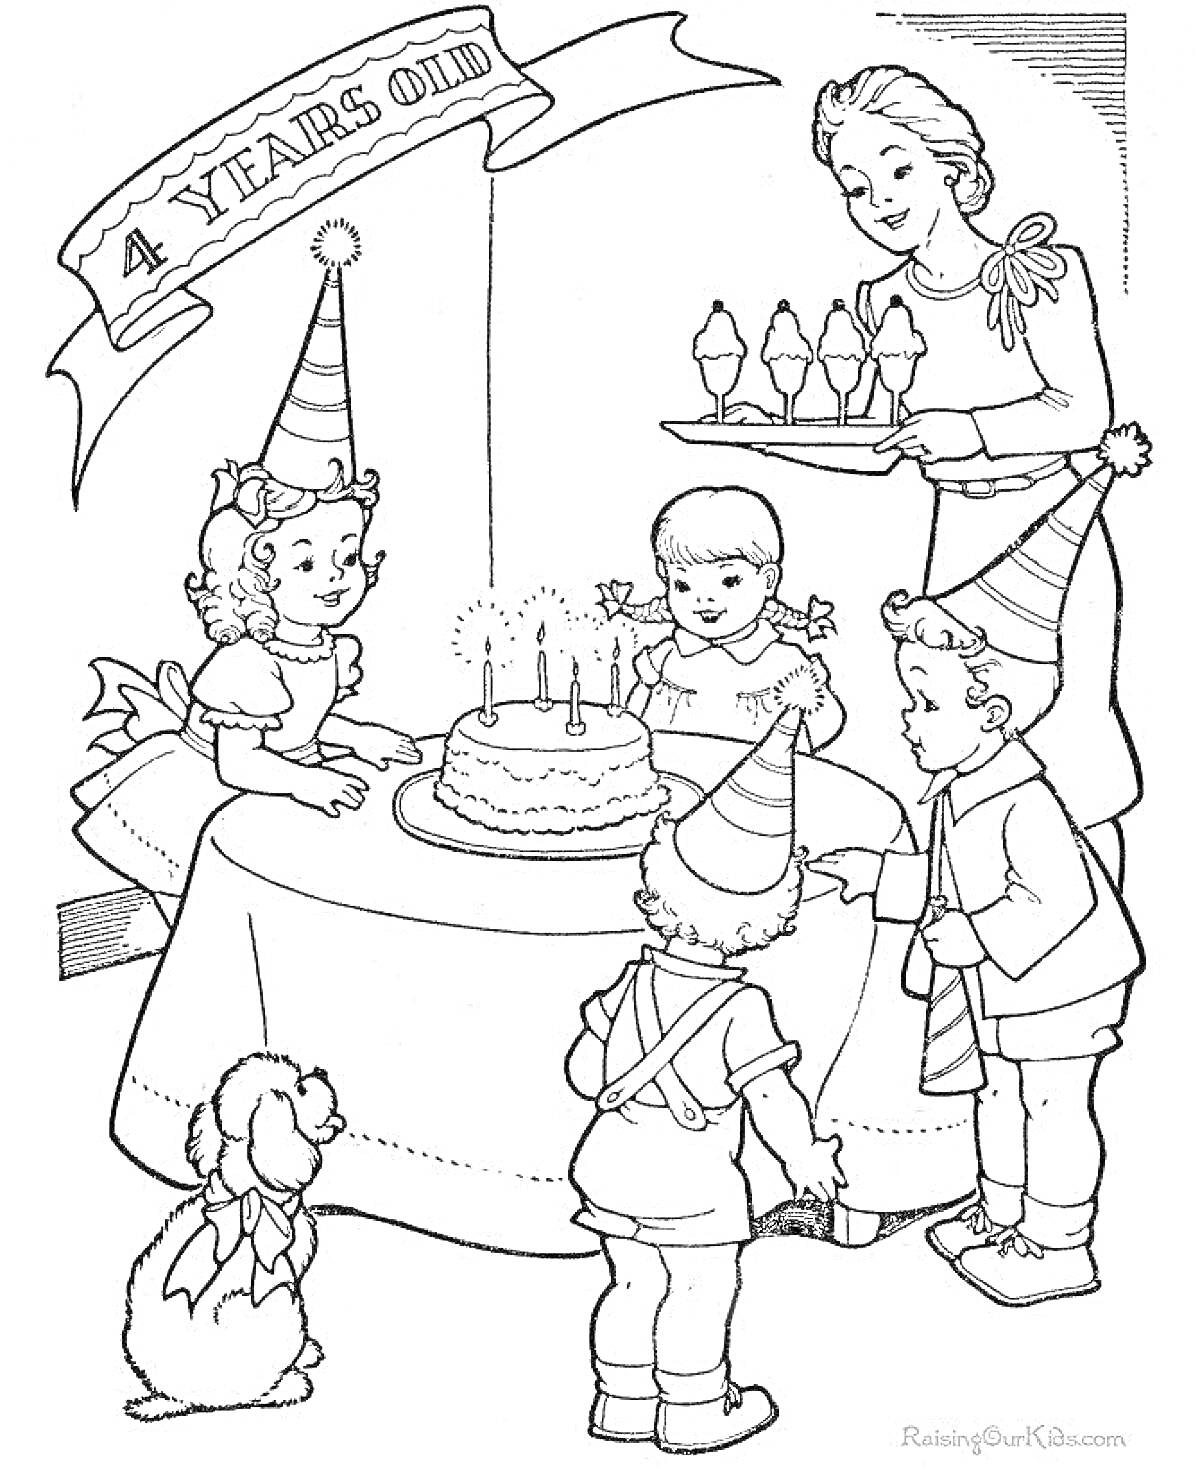 Раскраска День рождения: дети в праздничных колпаках вокруг торта с четырьмя свечами, взрослый подносит чашки с мороженым, игрушечная собачка